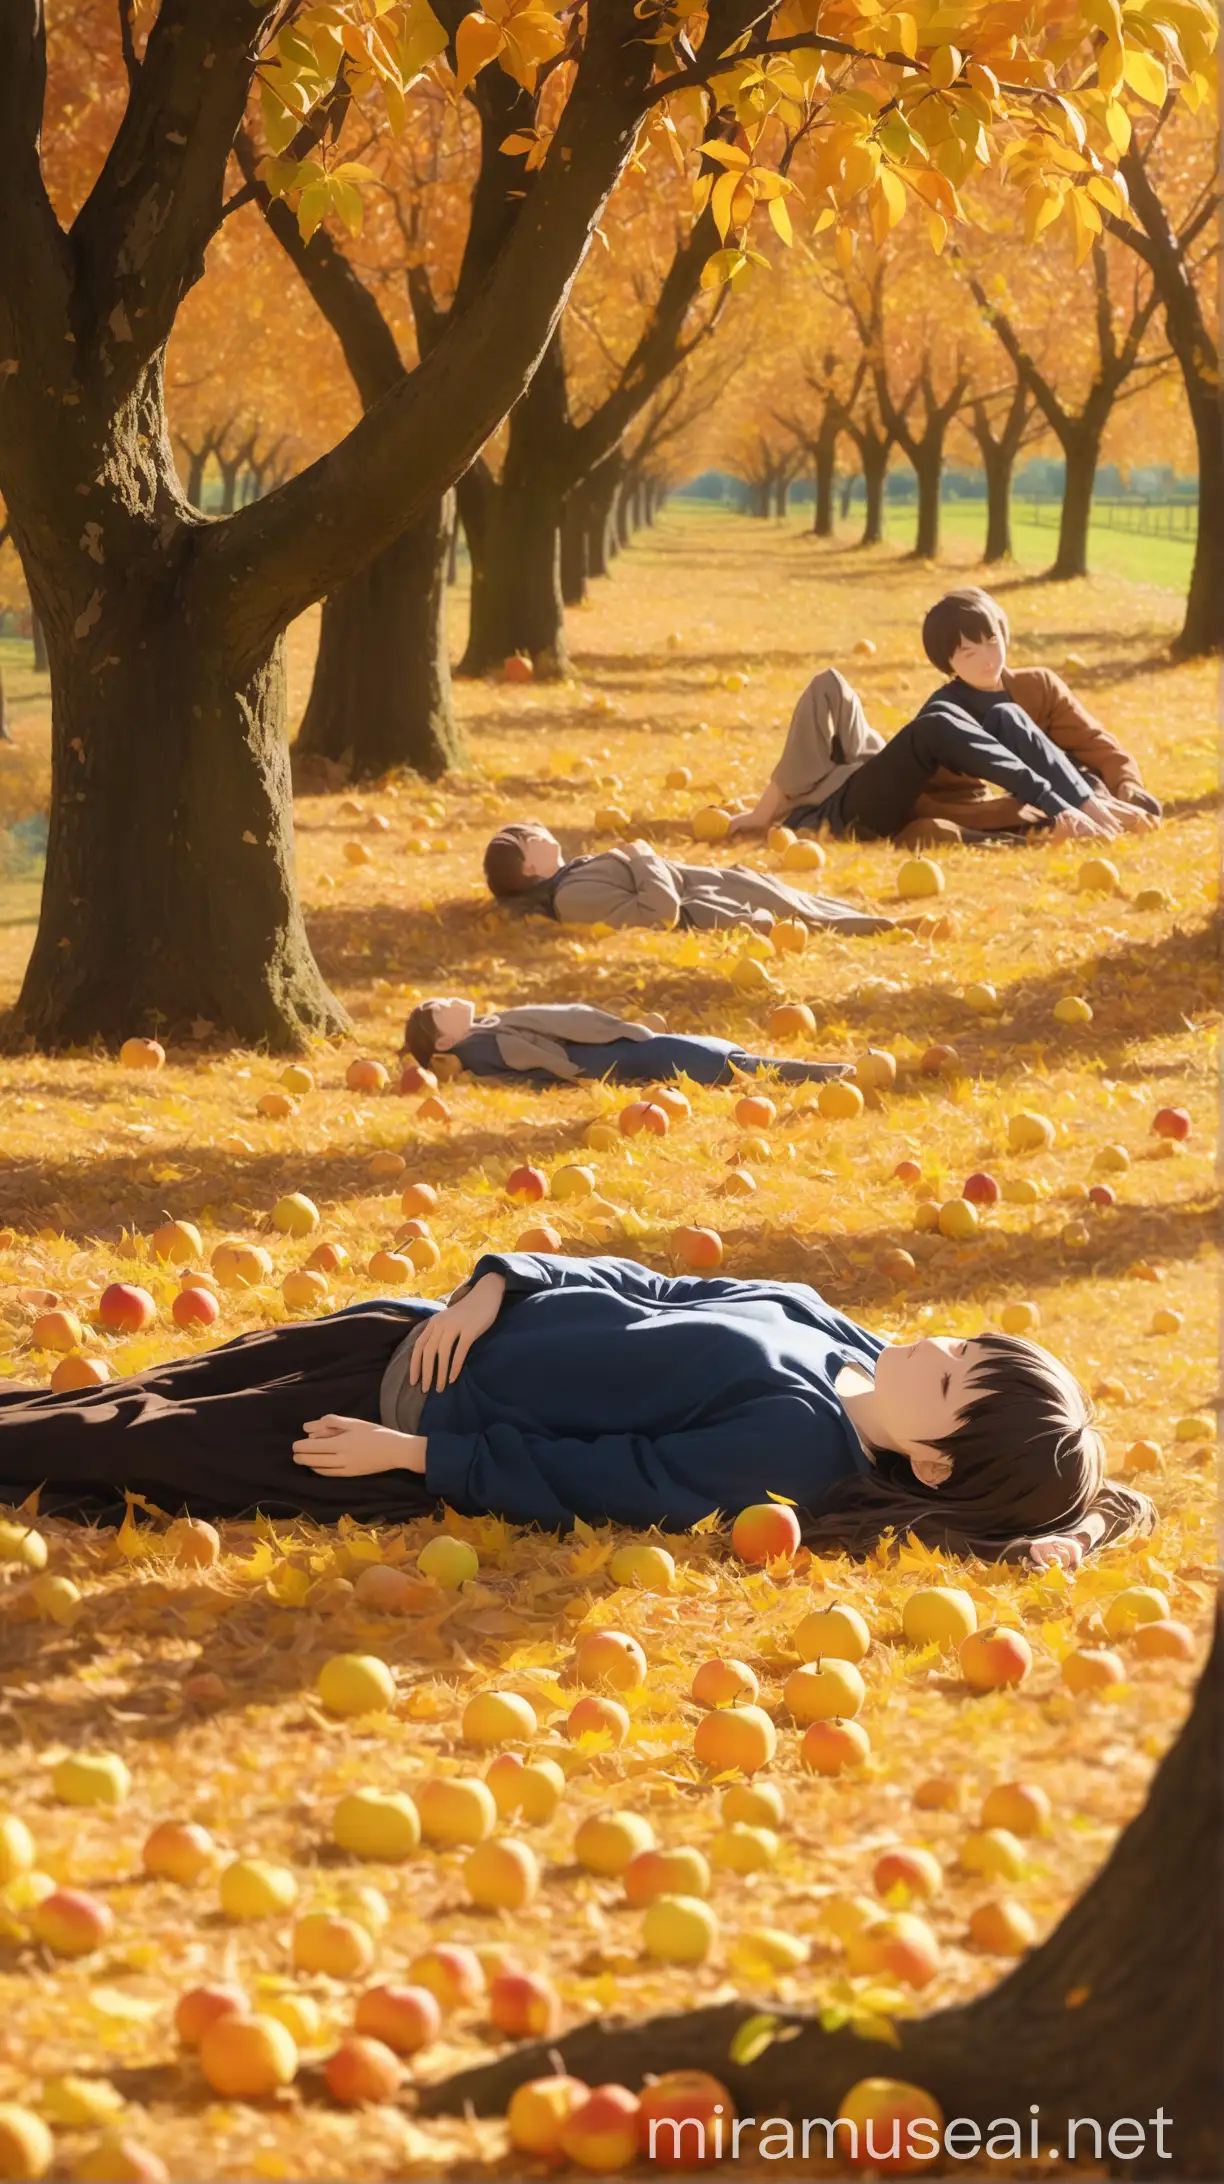 一个躺在秋天的果园里悠闲自得的农村青年